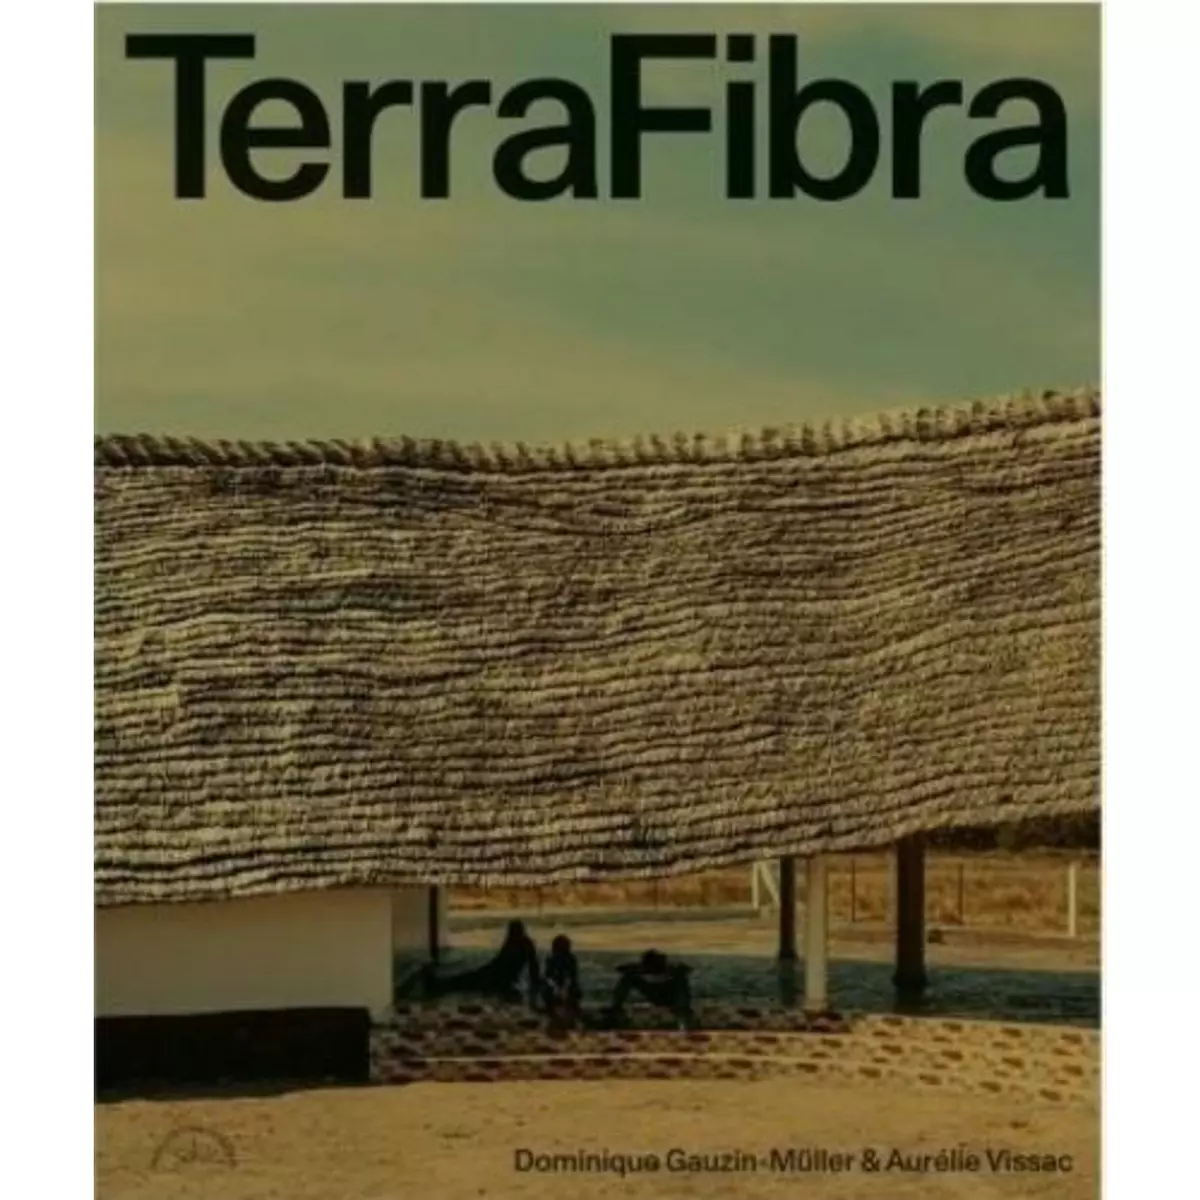  TERRAFIBRA ARCHITECTURES. EDITION BILINGUE FRANCAIS-ANGLAIS, Gauzin-Müller Dominique